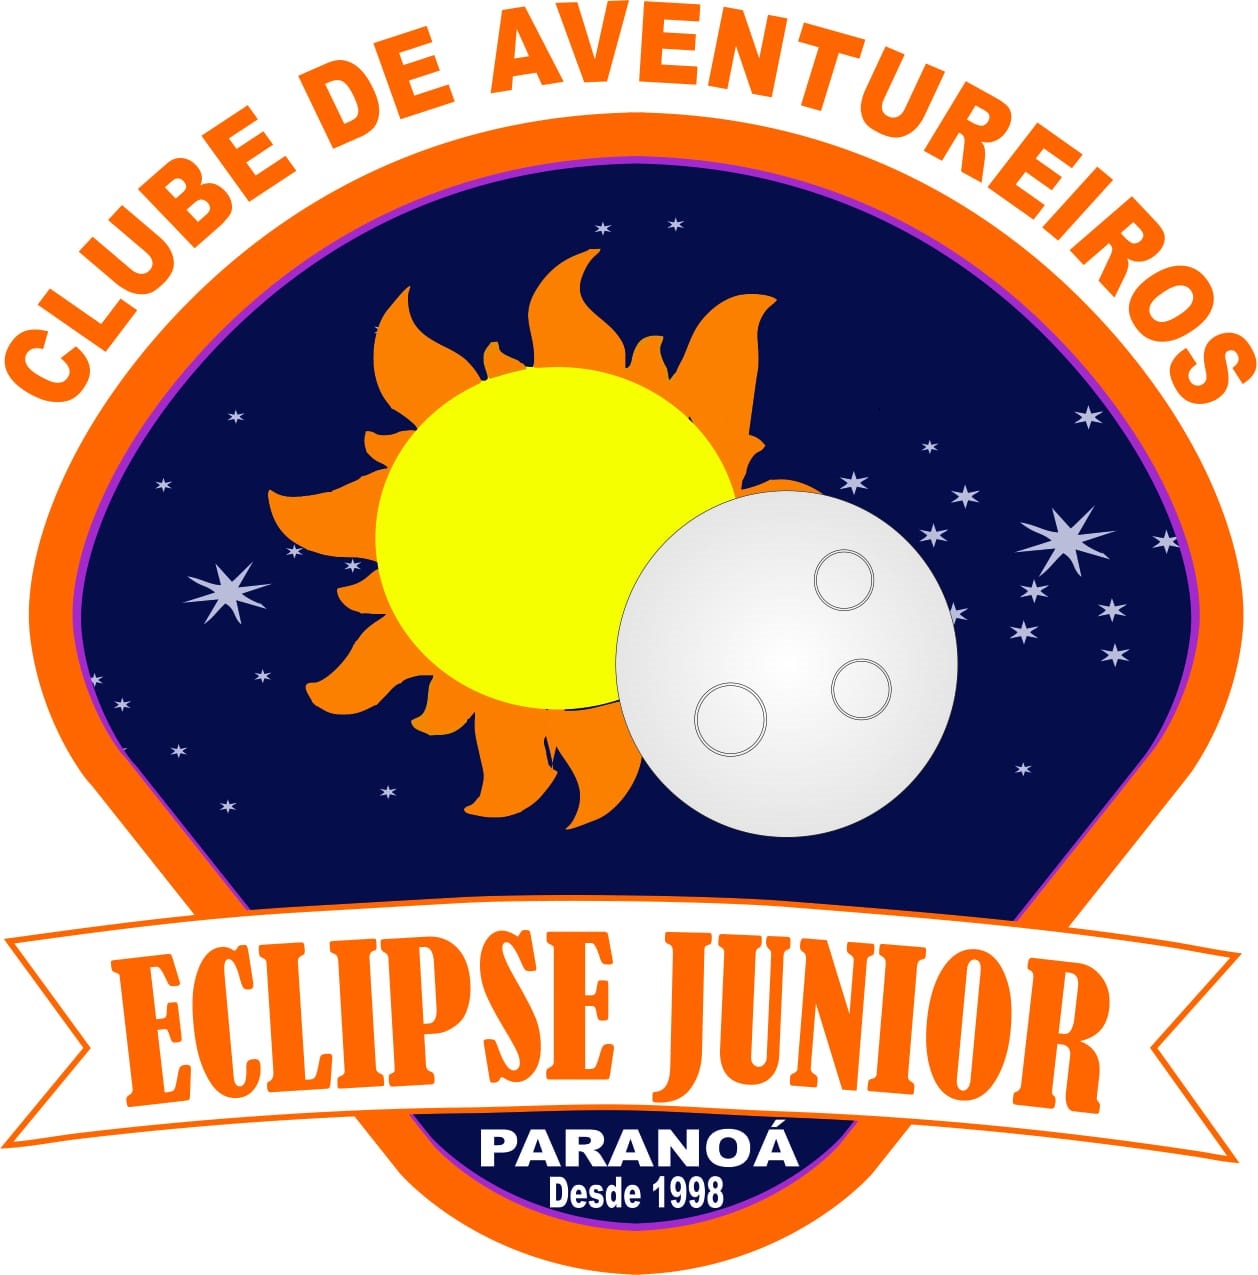 Eclipse Junior